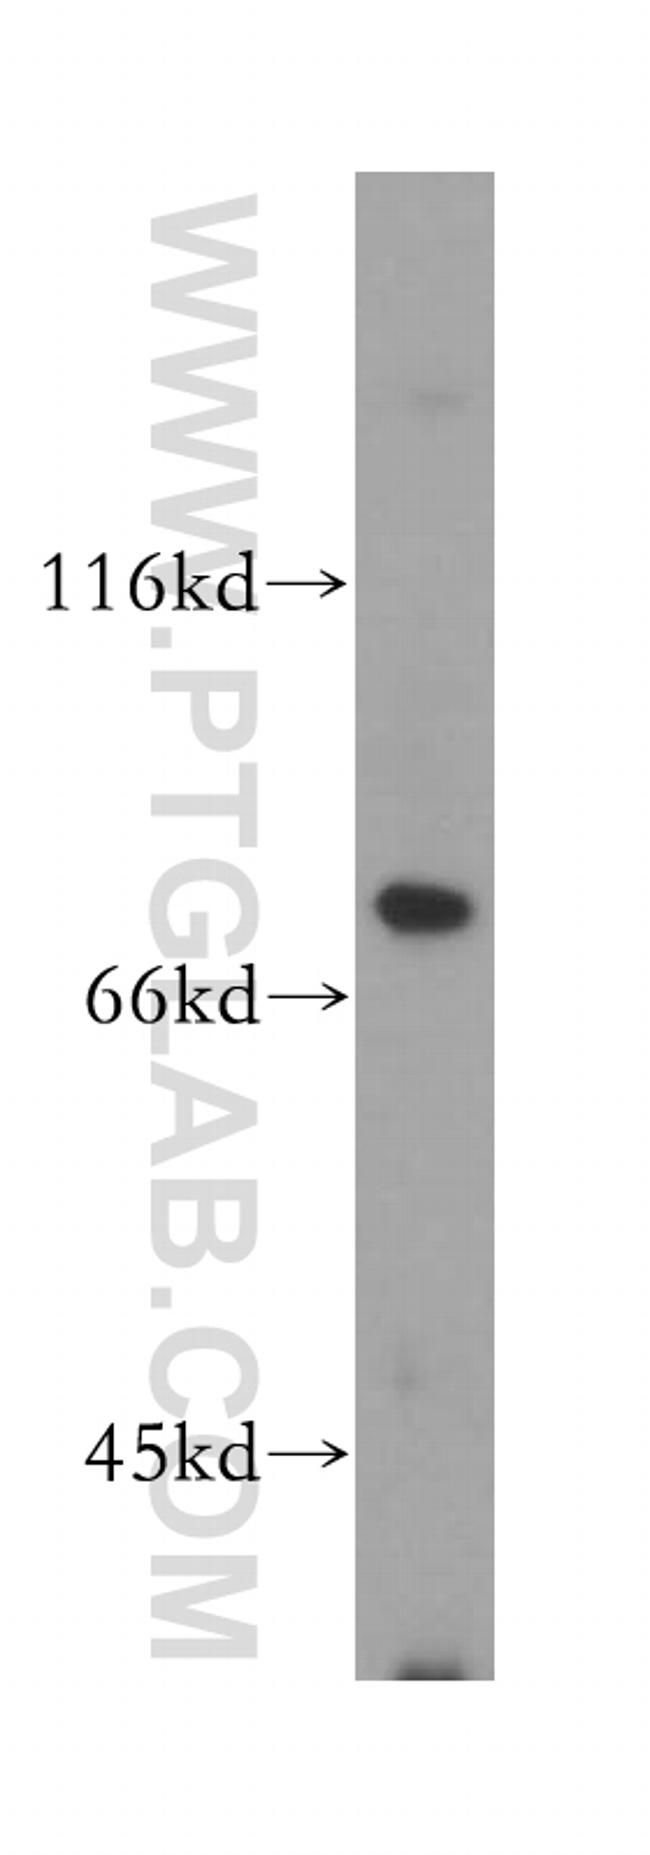 MAN1A2 Antibody in Western Blot (WB)